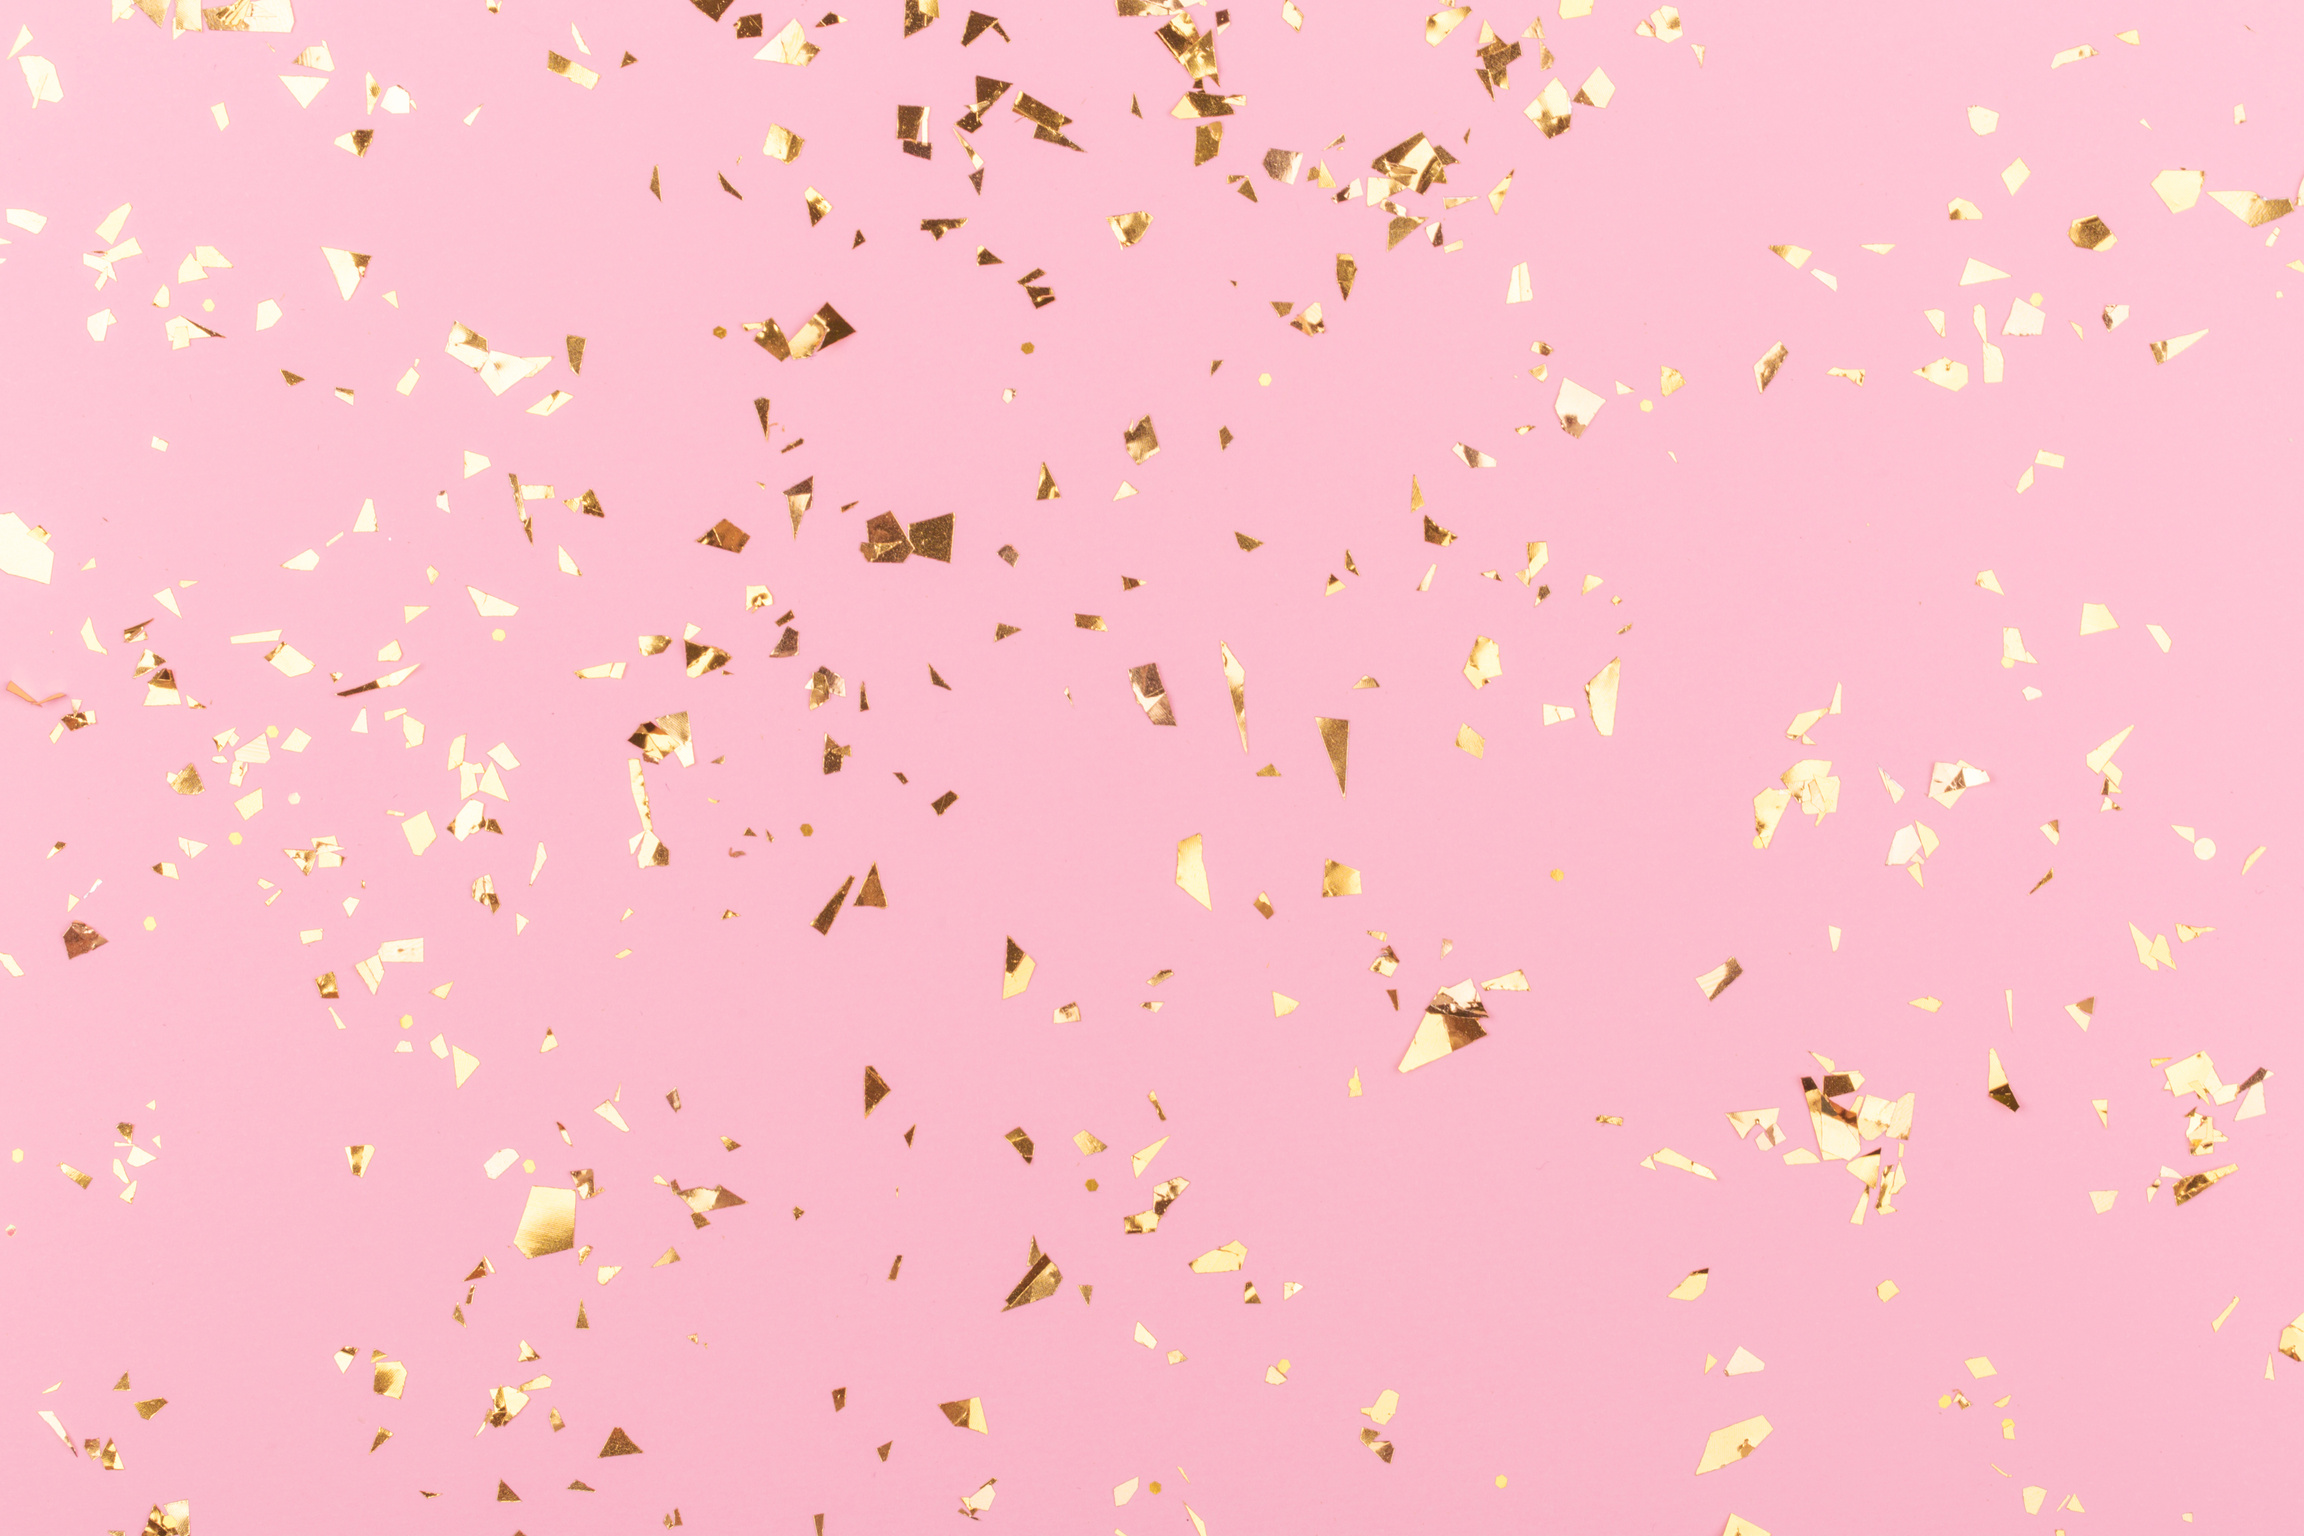 Golden sparkles on pink